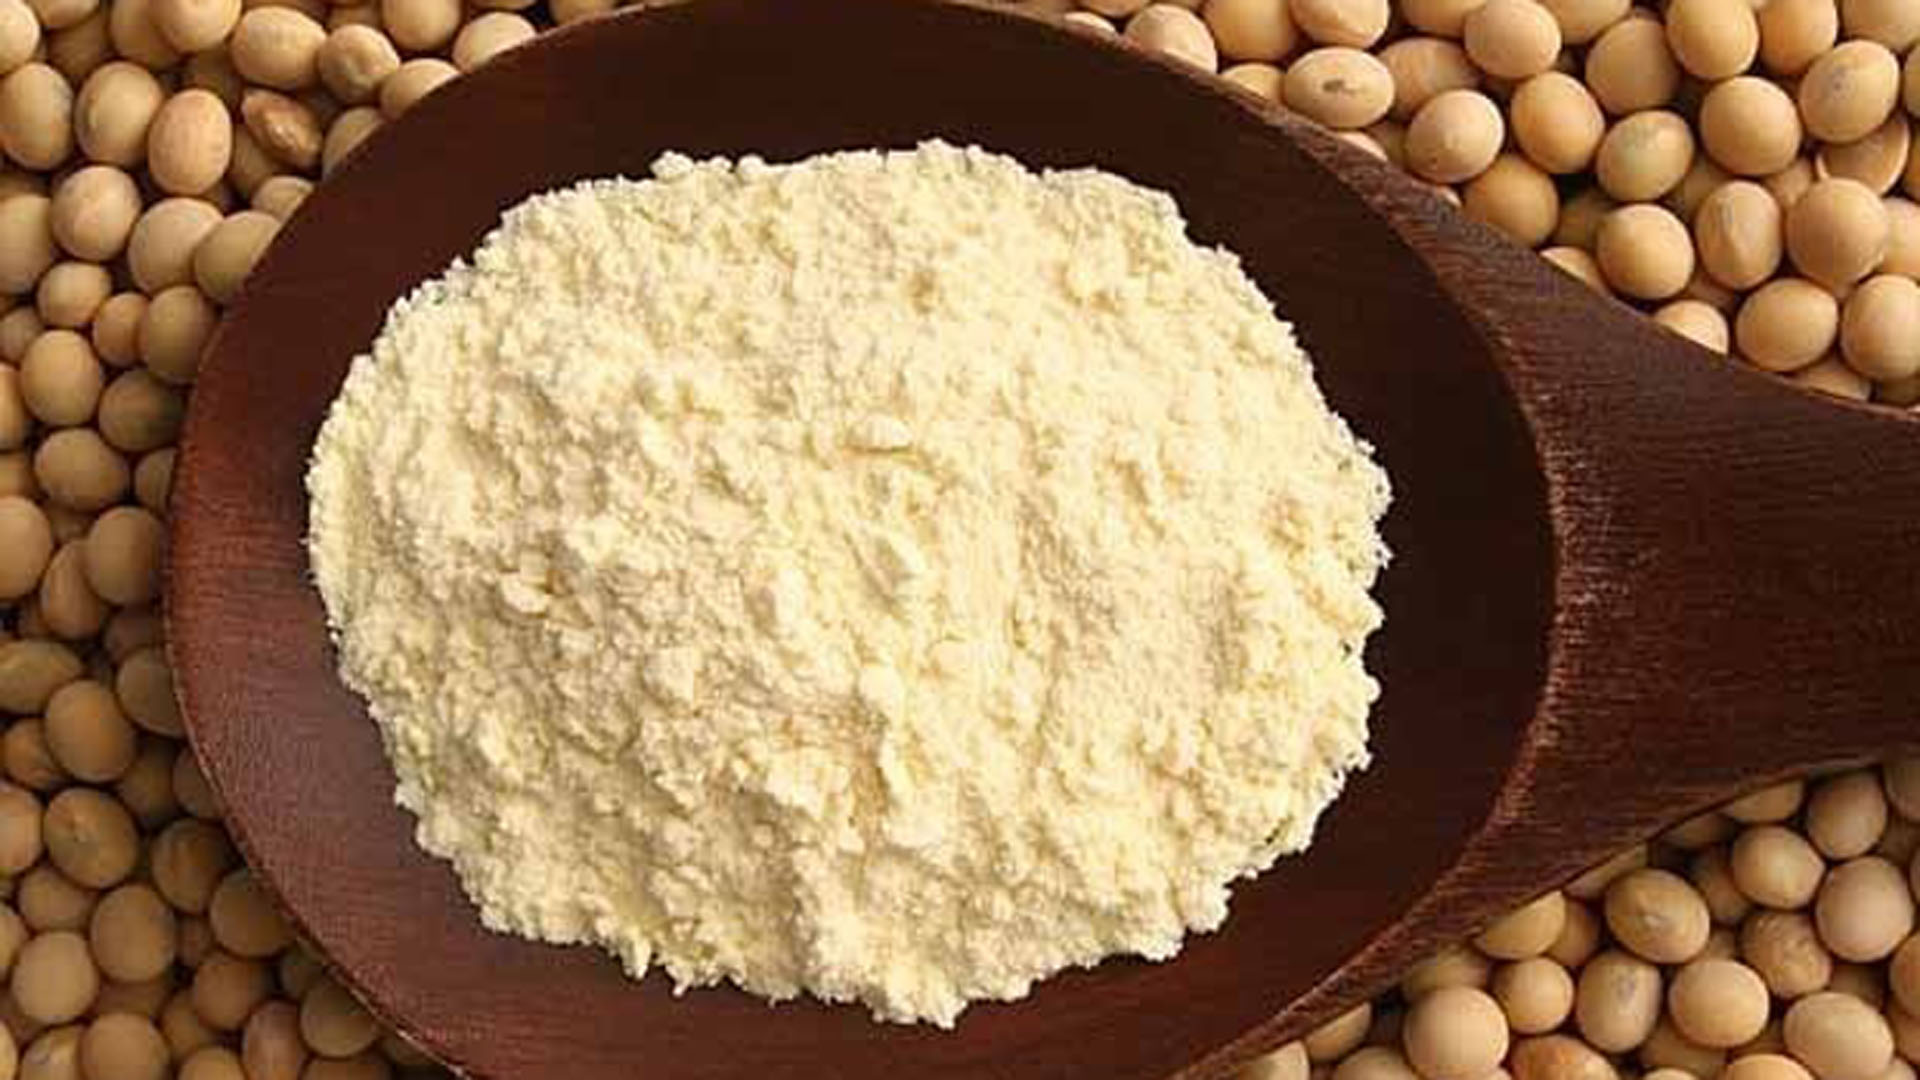 El principal ítem de exportación no es el poroto, sino la harina de soja